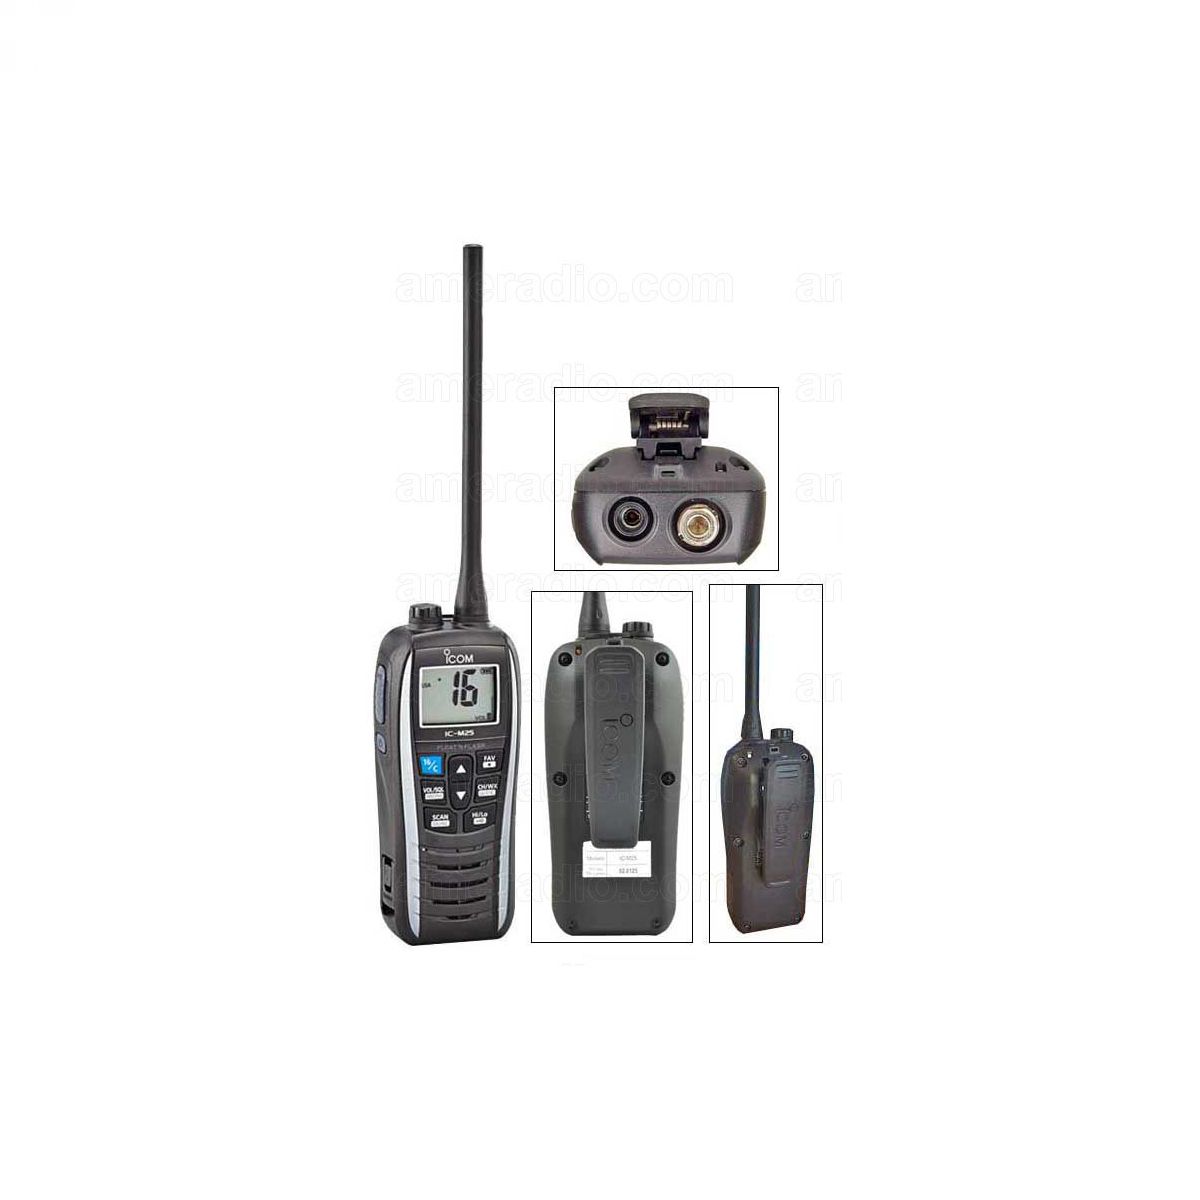 Icom IC-M25 EURO VHF prijenosna radijska postaja PLAVA